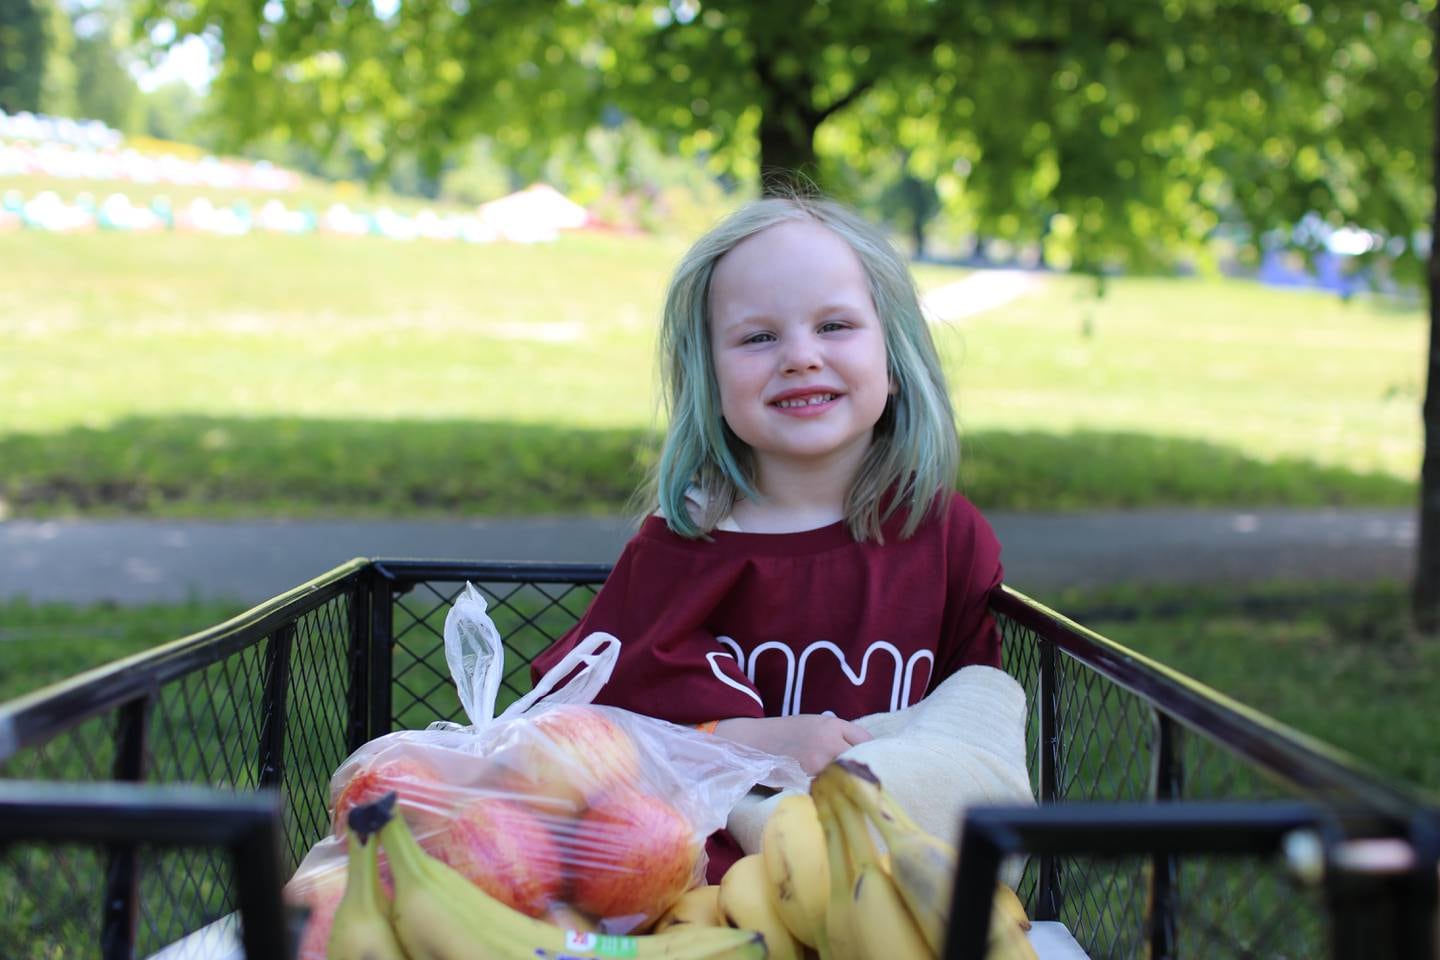 En jente på 4 år som sitter i en vogn med frukt. Hun har blått hår.2